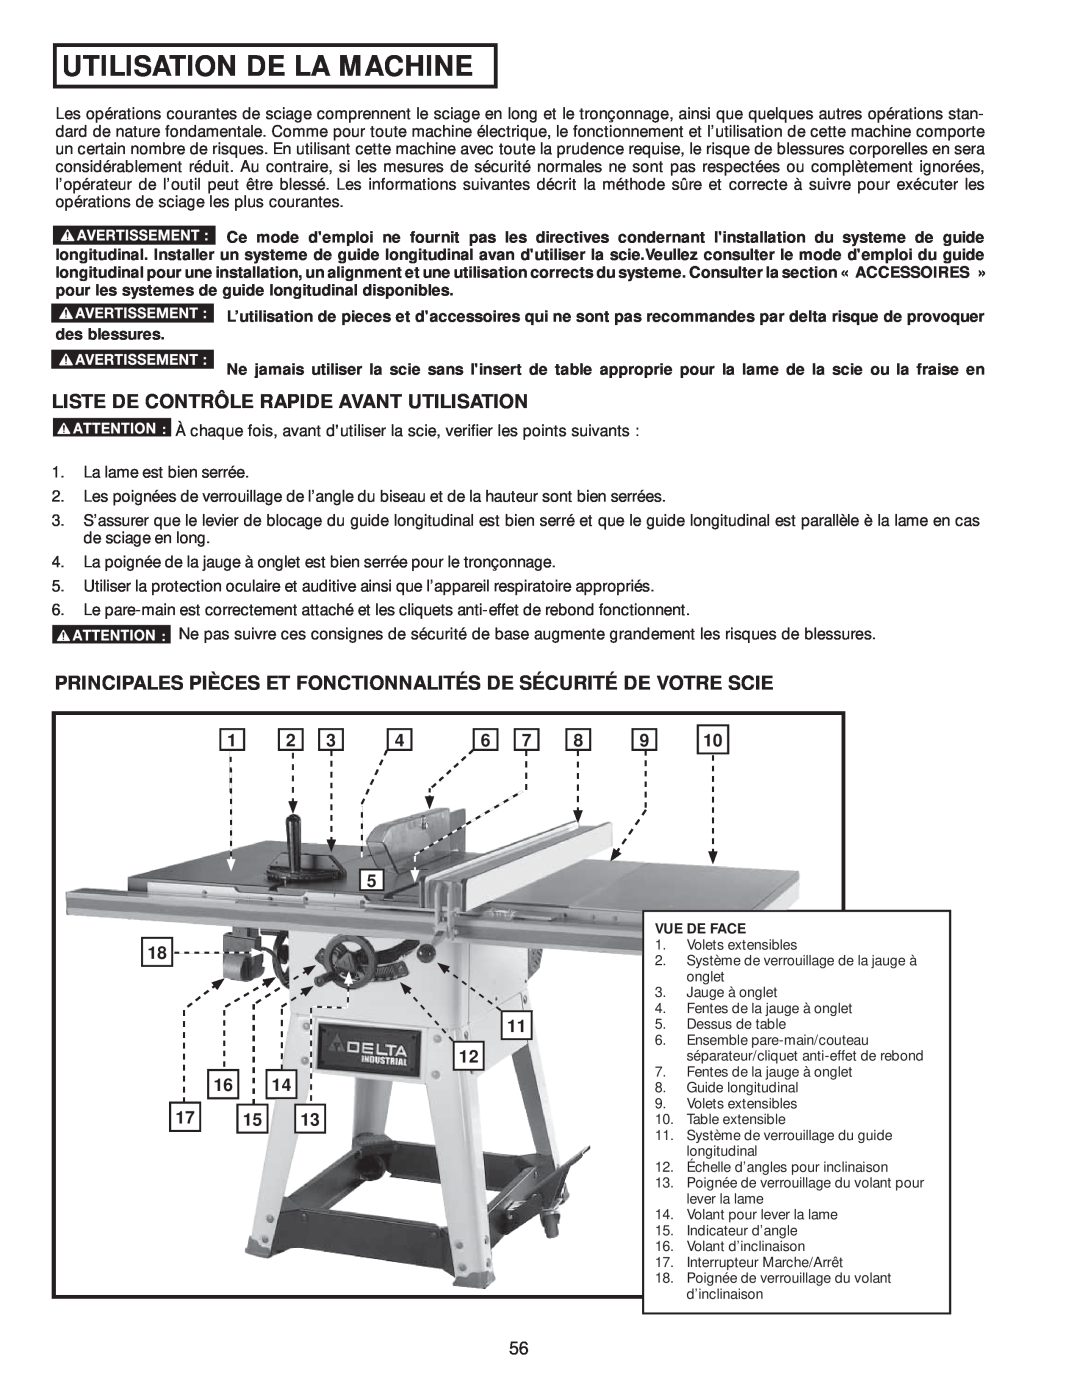 Delta 36-979, 36-978 instruction manual Utilisation De La Machine, Liste De Contrôle Rapide Avant Utilisation 